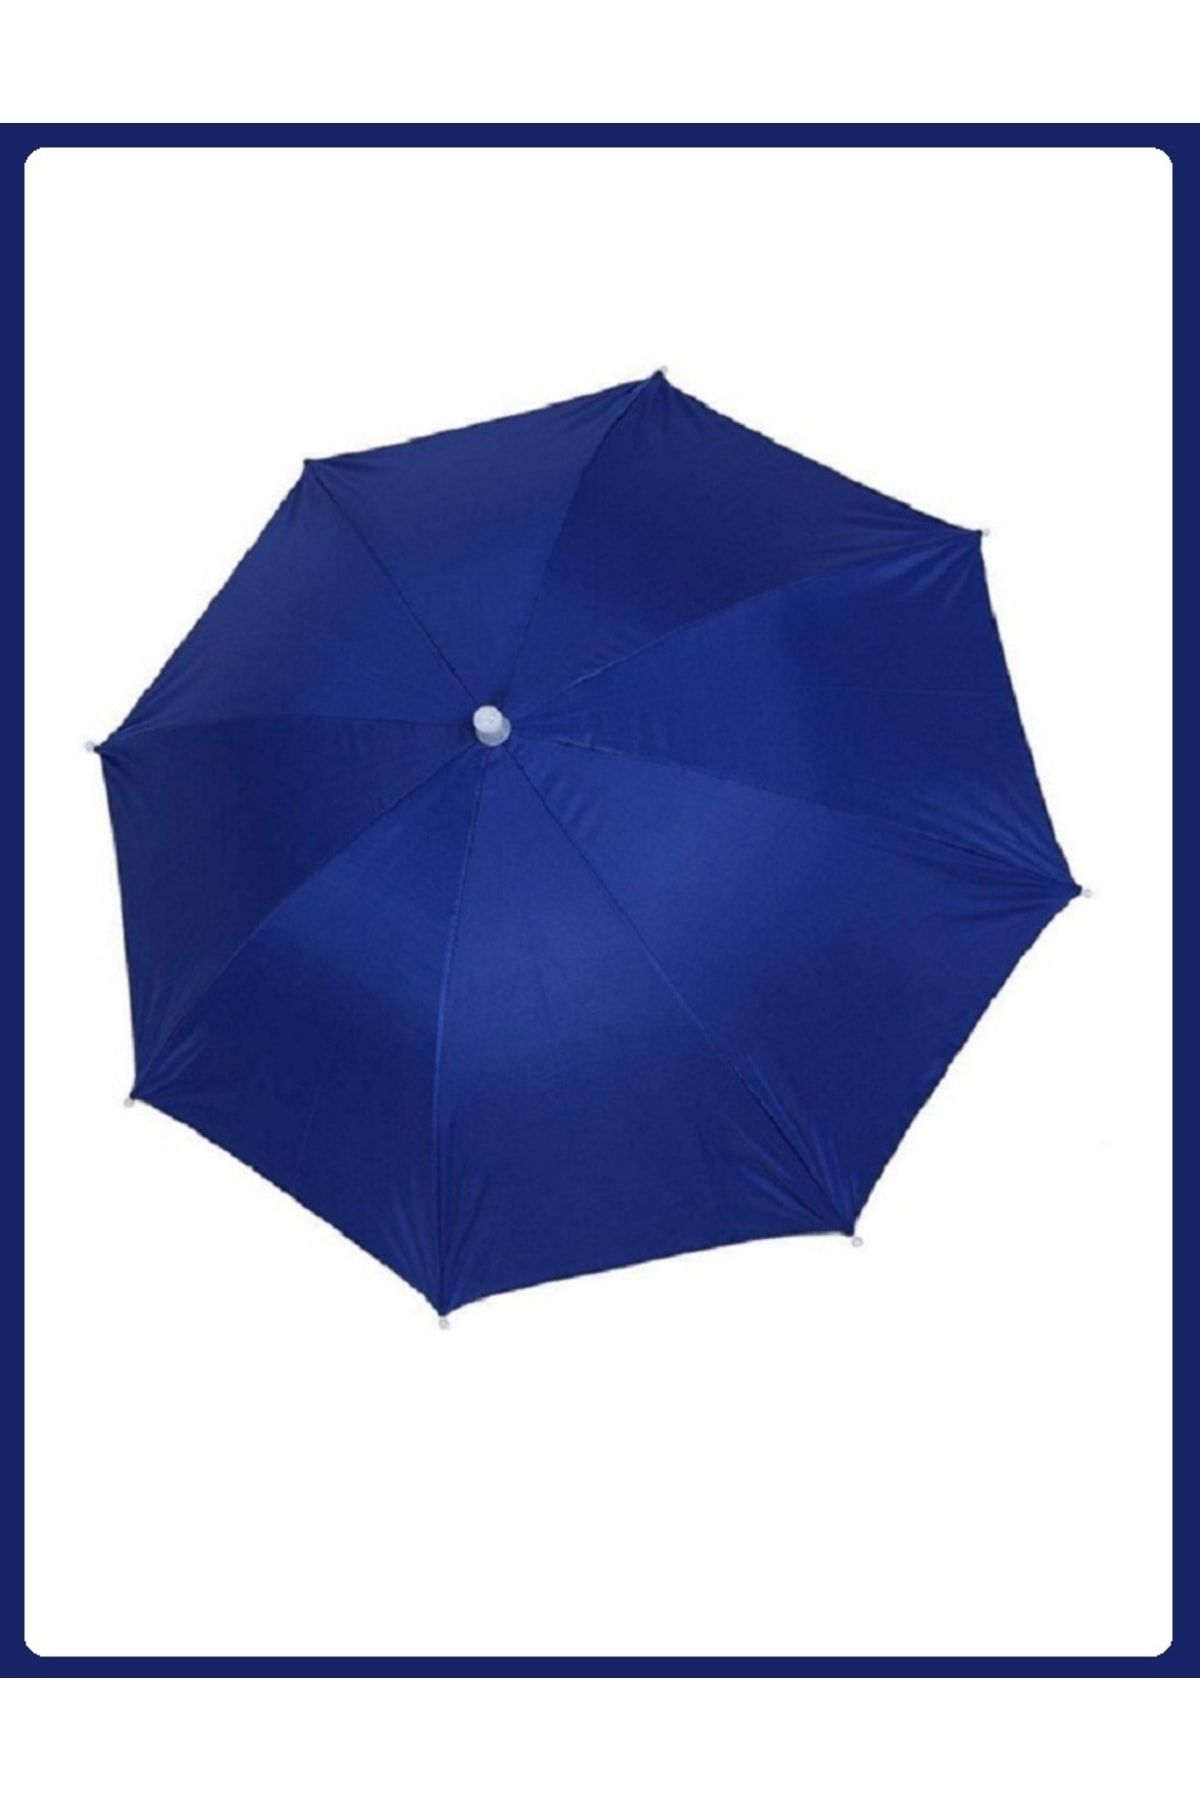 EZMK EV GEREÇLERİ Kafa Şemsiyesi Mavi, Yazlık Plaj Güneş Şemsiyesi